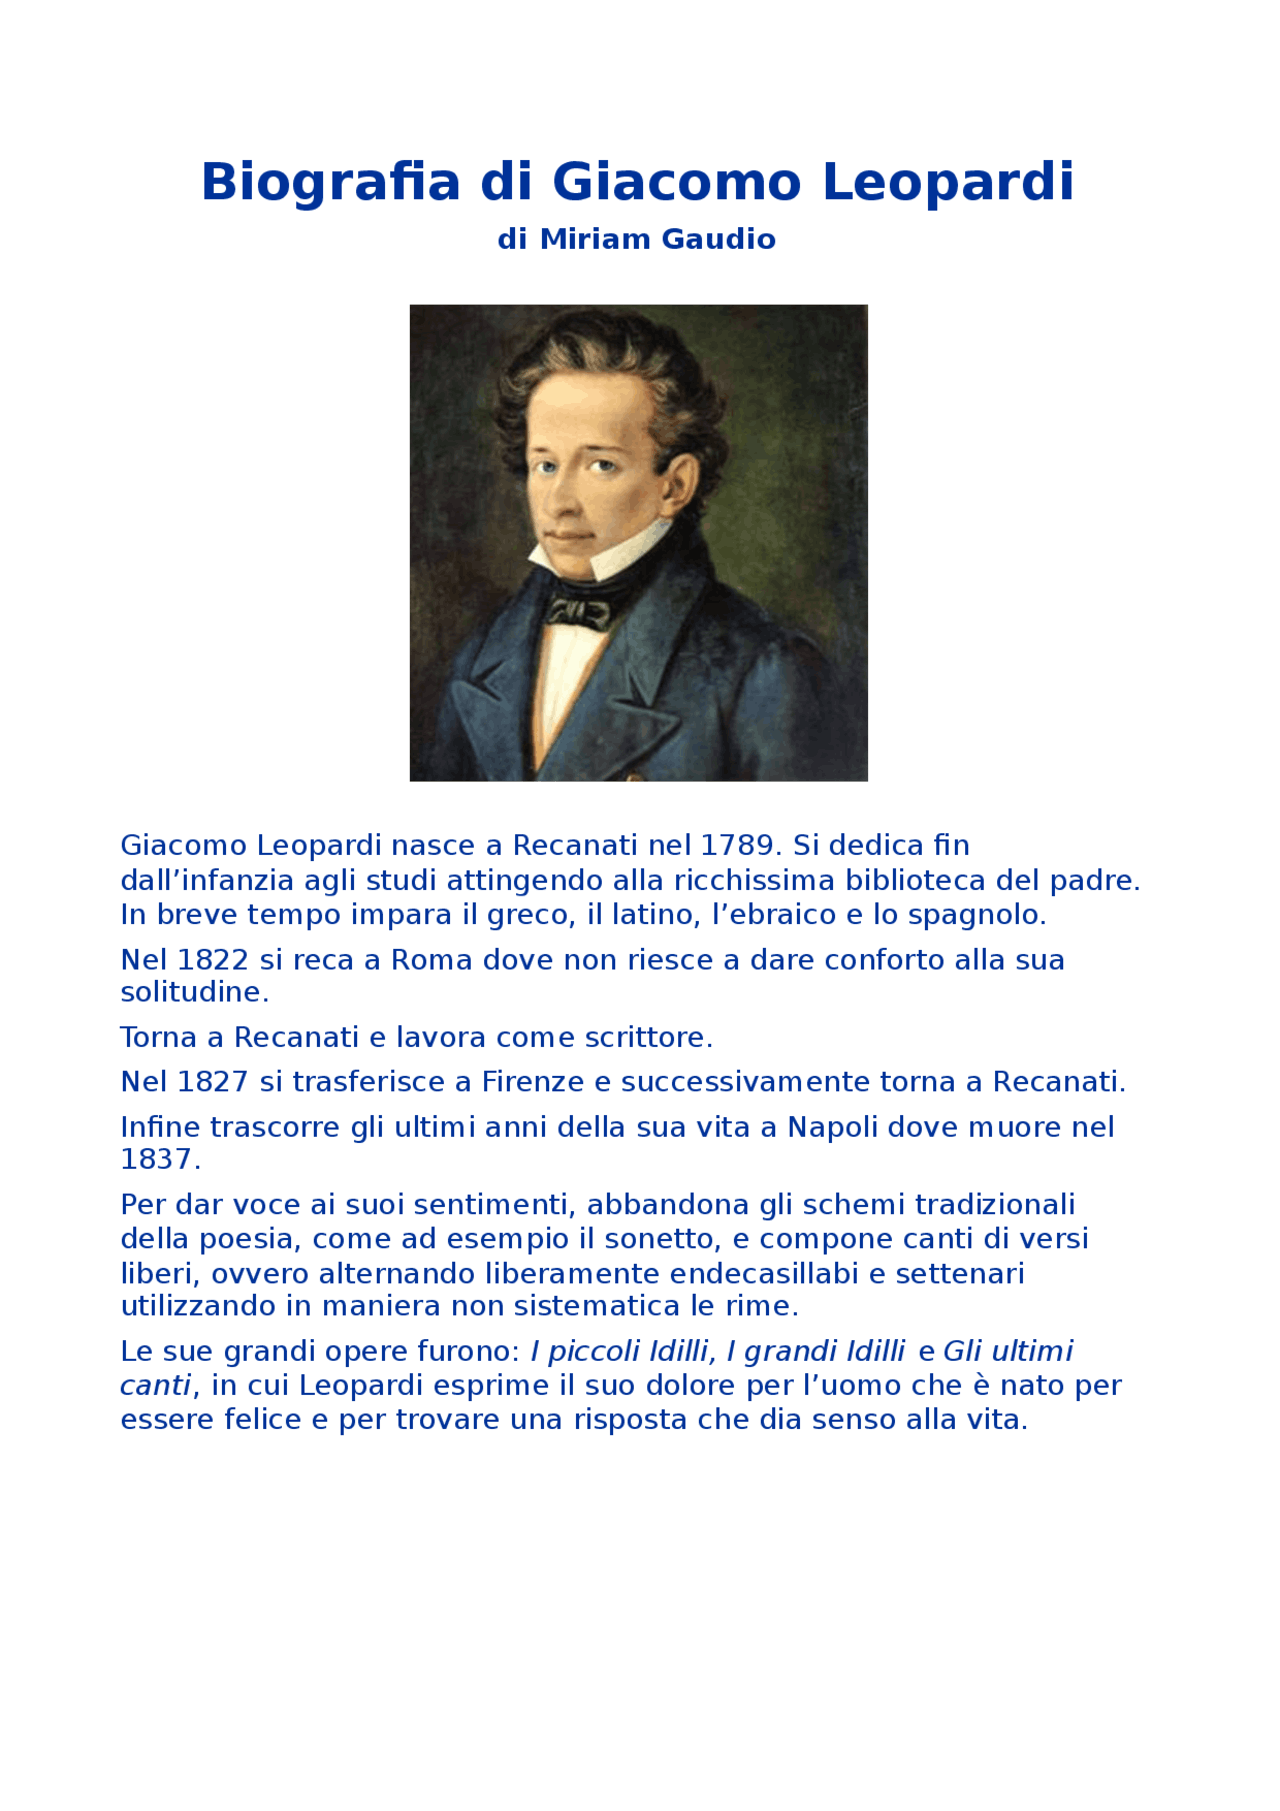  Biographie de Giacomo Leopardi